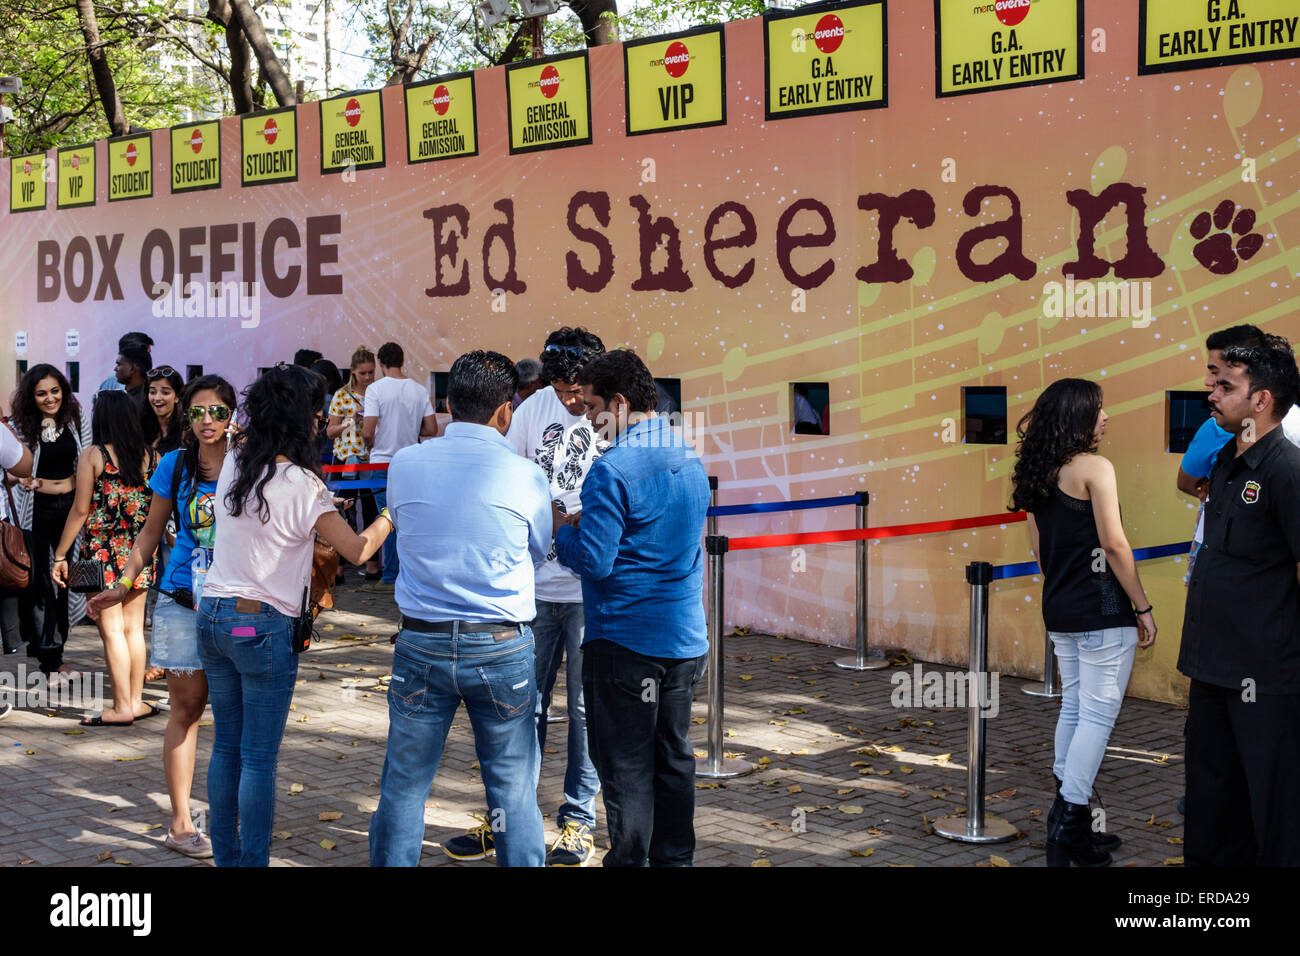 Mumbai India,Mahalaxmi,Mahalakshmi Nagar,Mahalakshmi Nagar,race course,Ed Sheeran concert,box office,fans,before,India150301174 Stock Photo